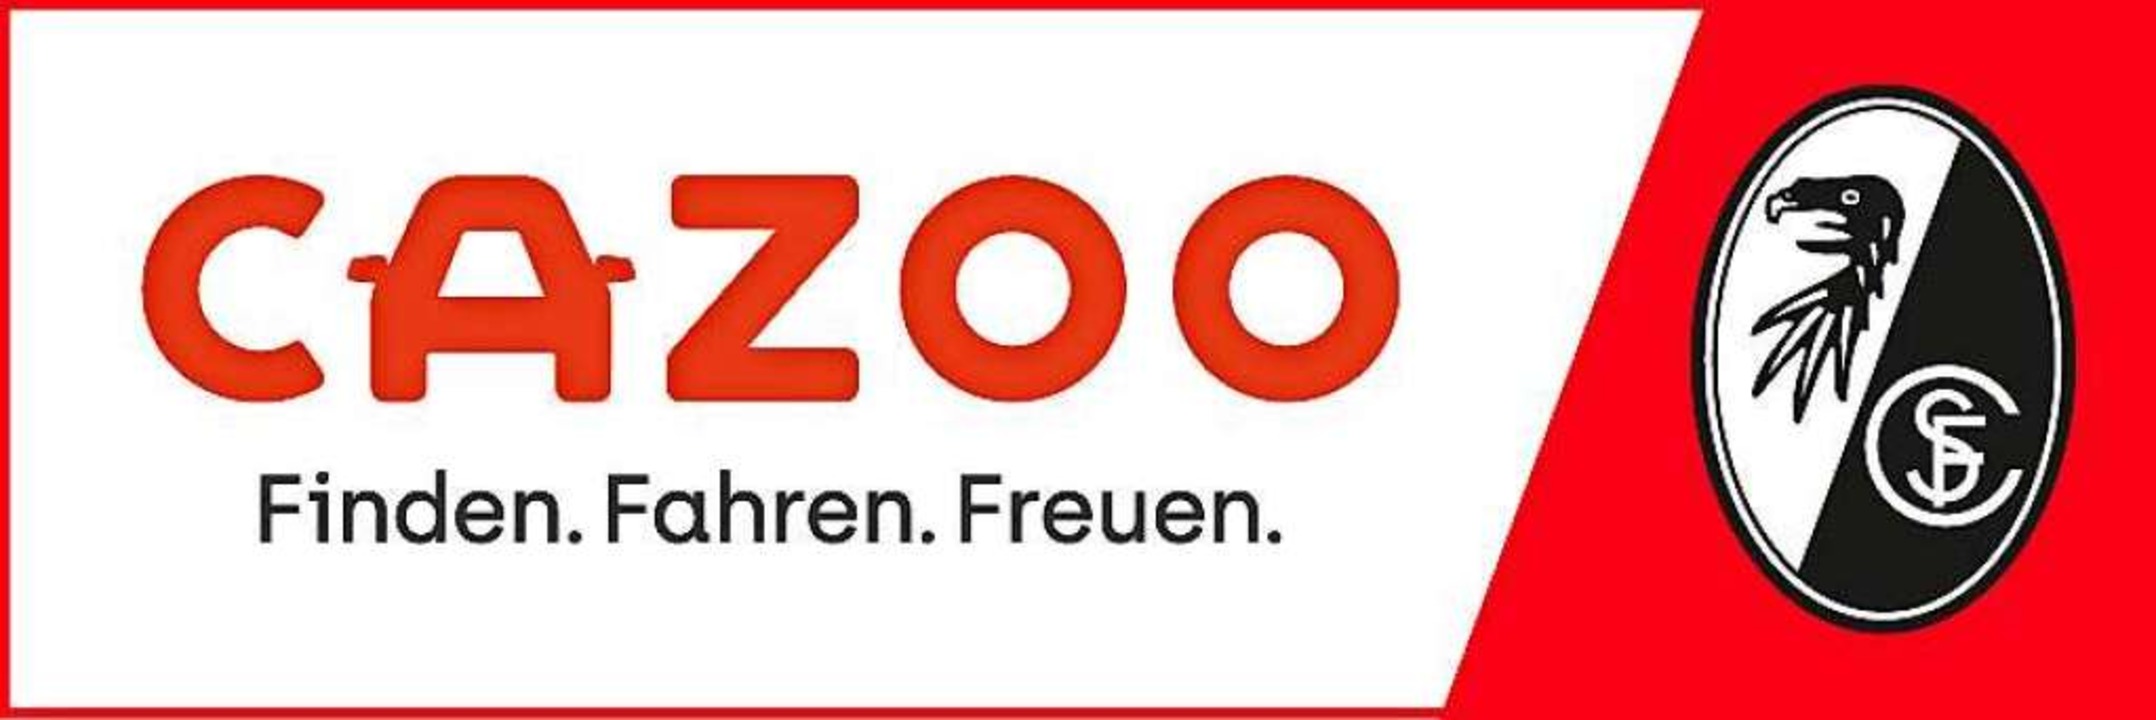 Neuer SC-Freiburg-Trikotsponsor Cazoo will